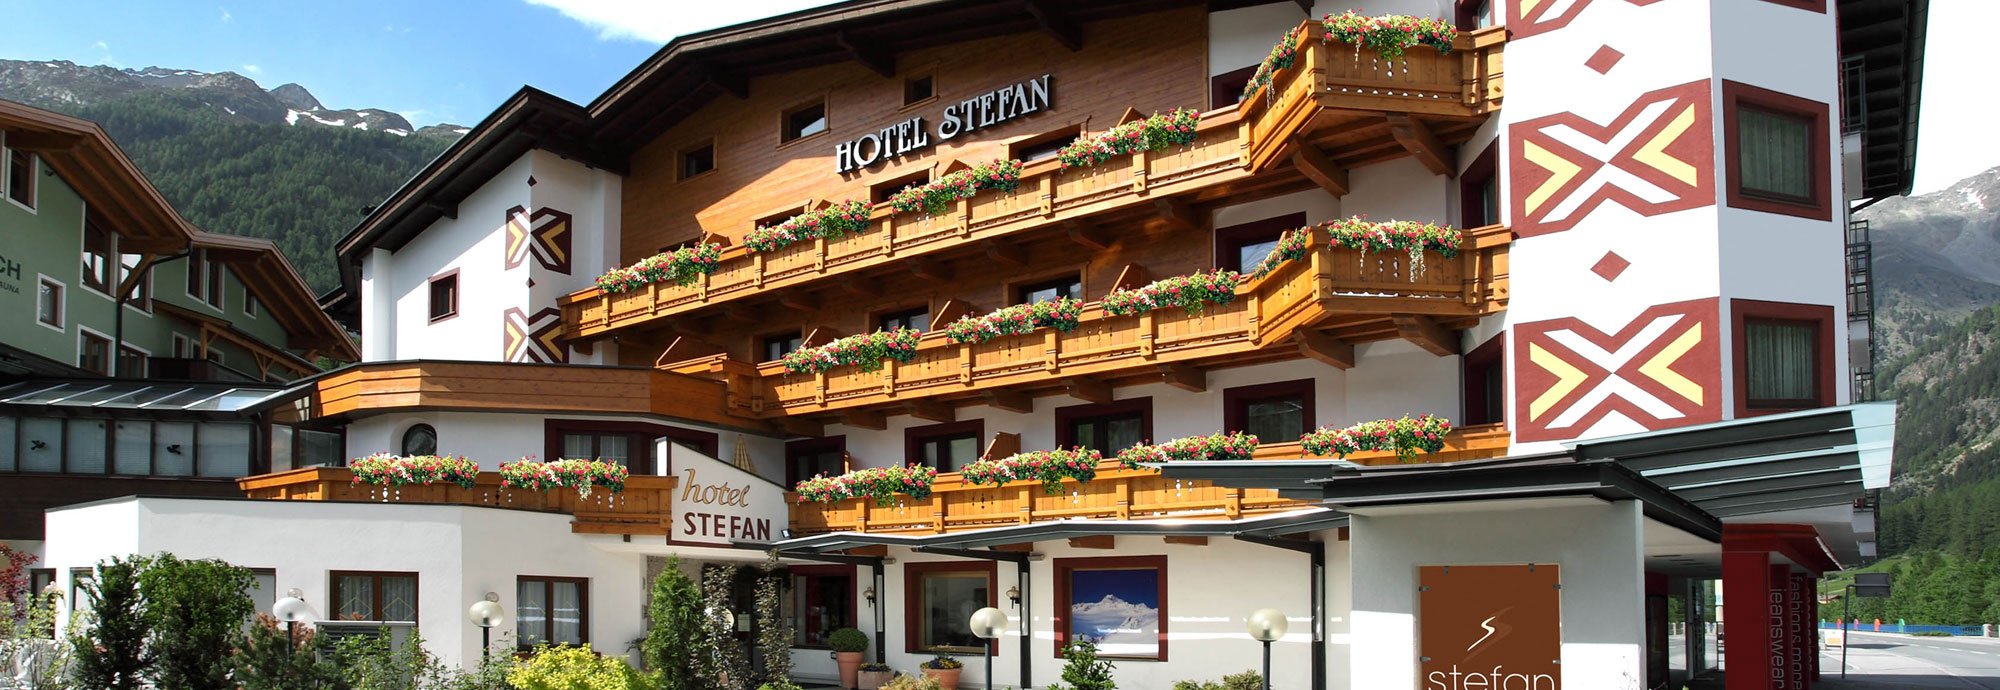 Hotel Stefan